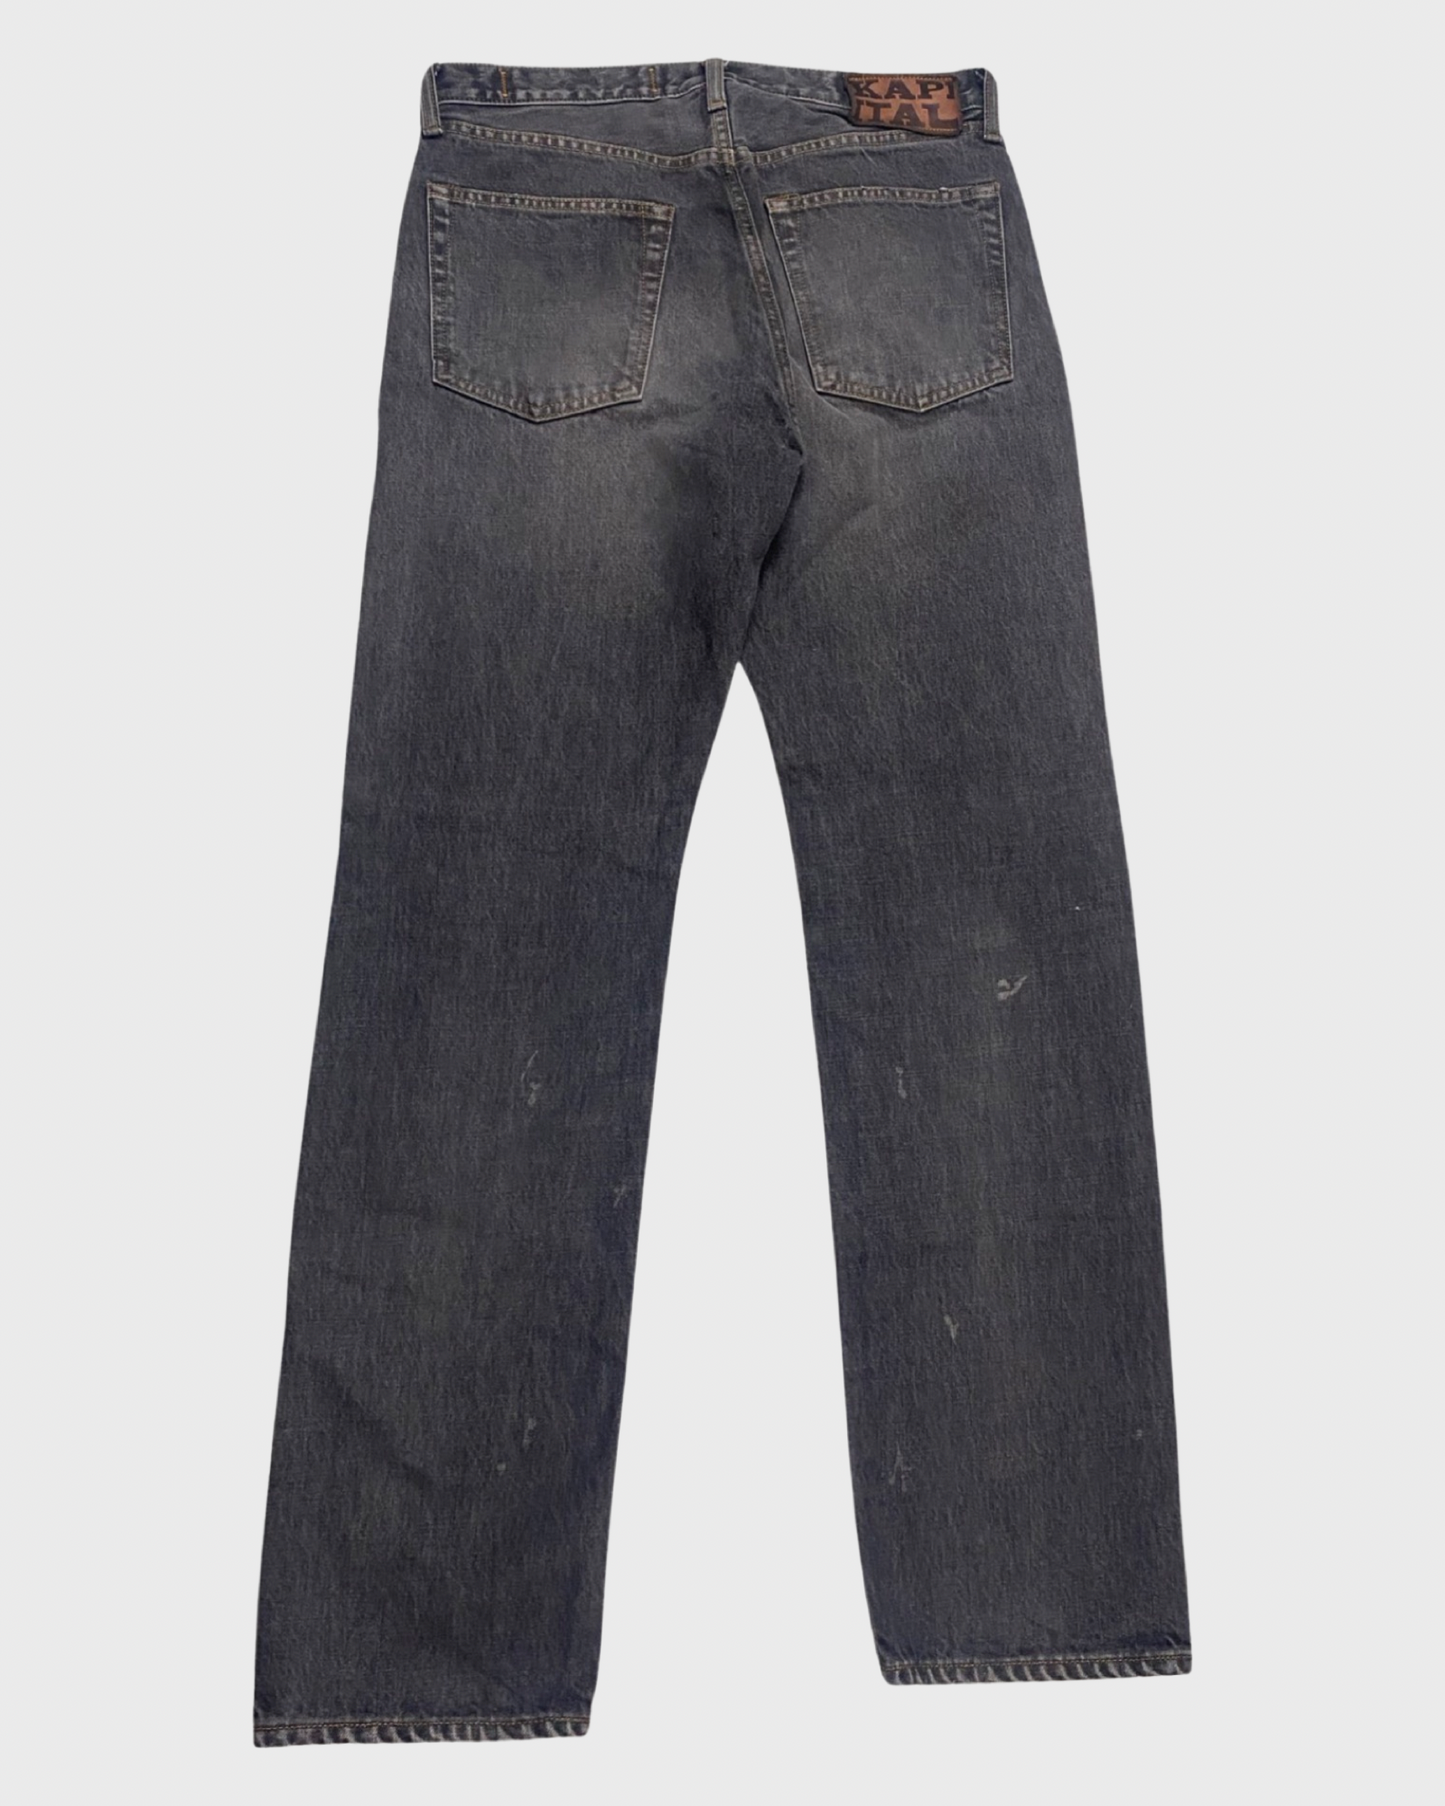 Kapital washed black shashiko jeans Size:W32